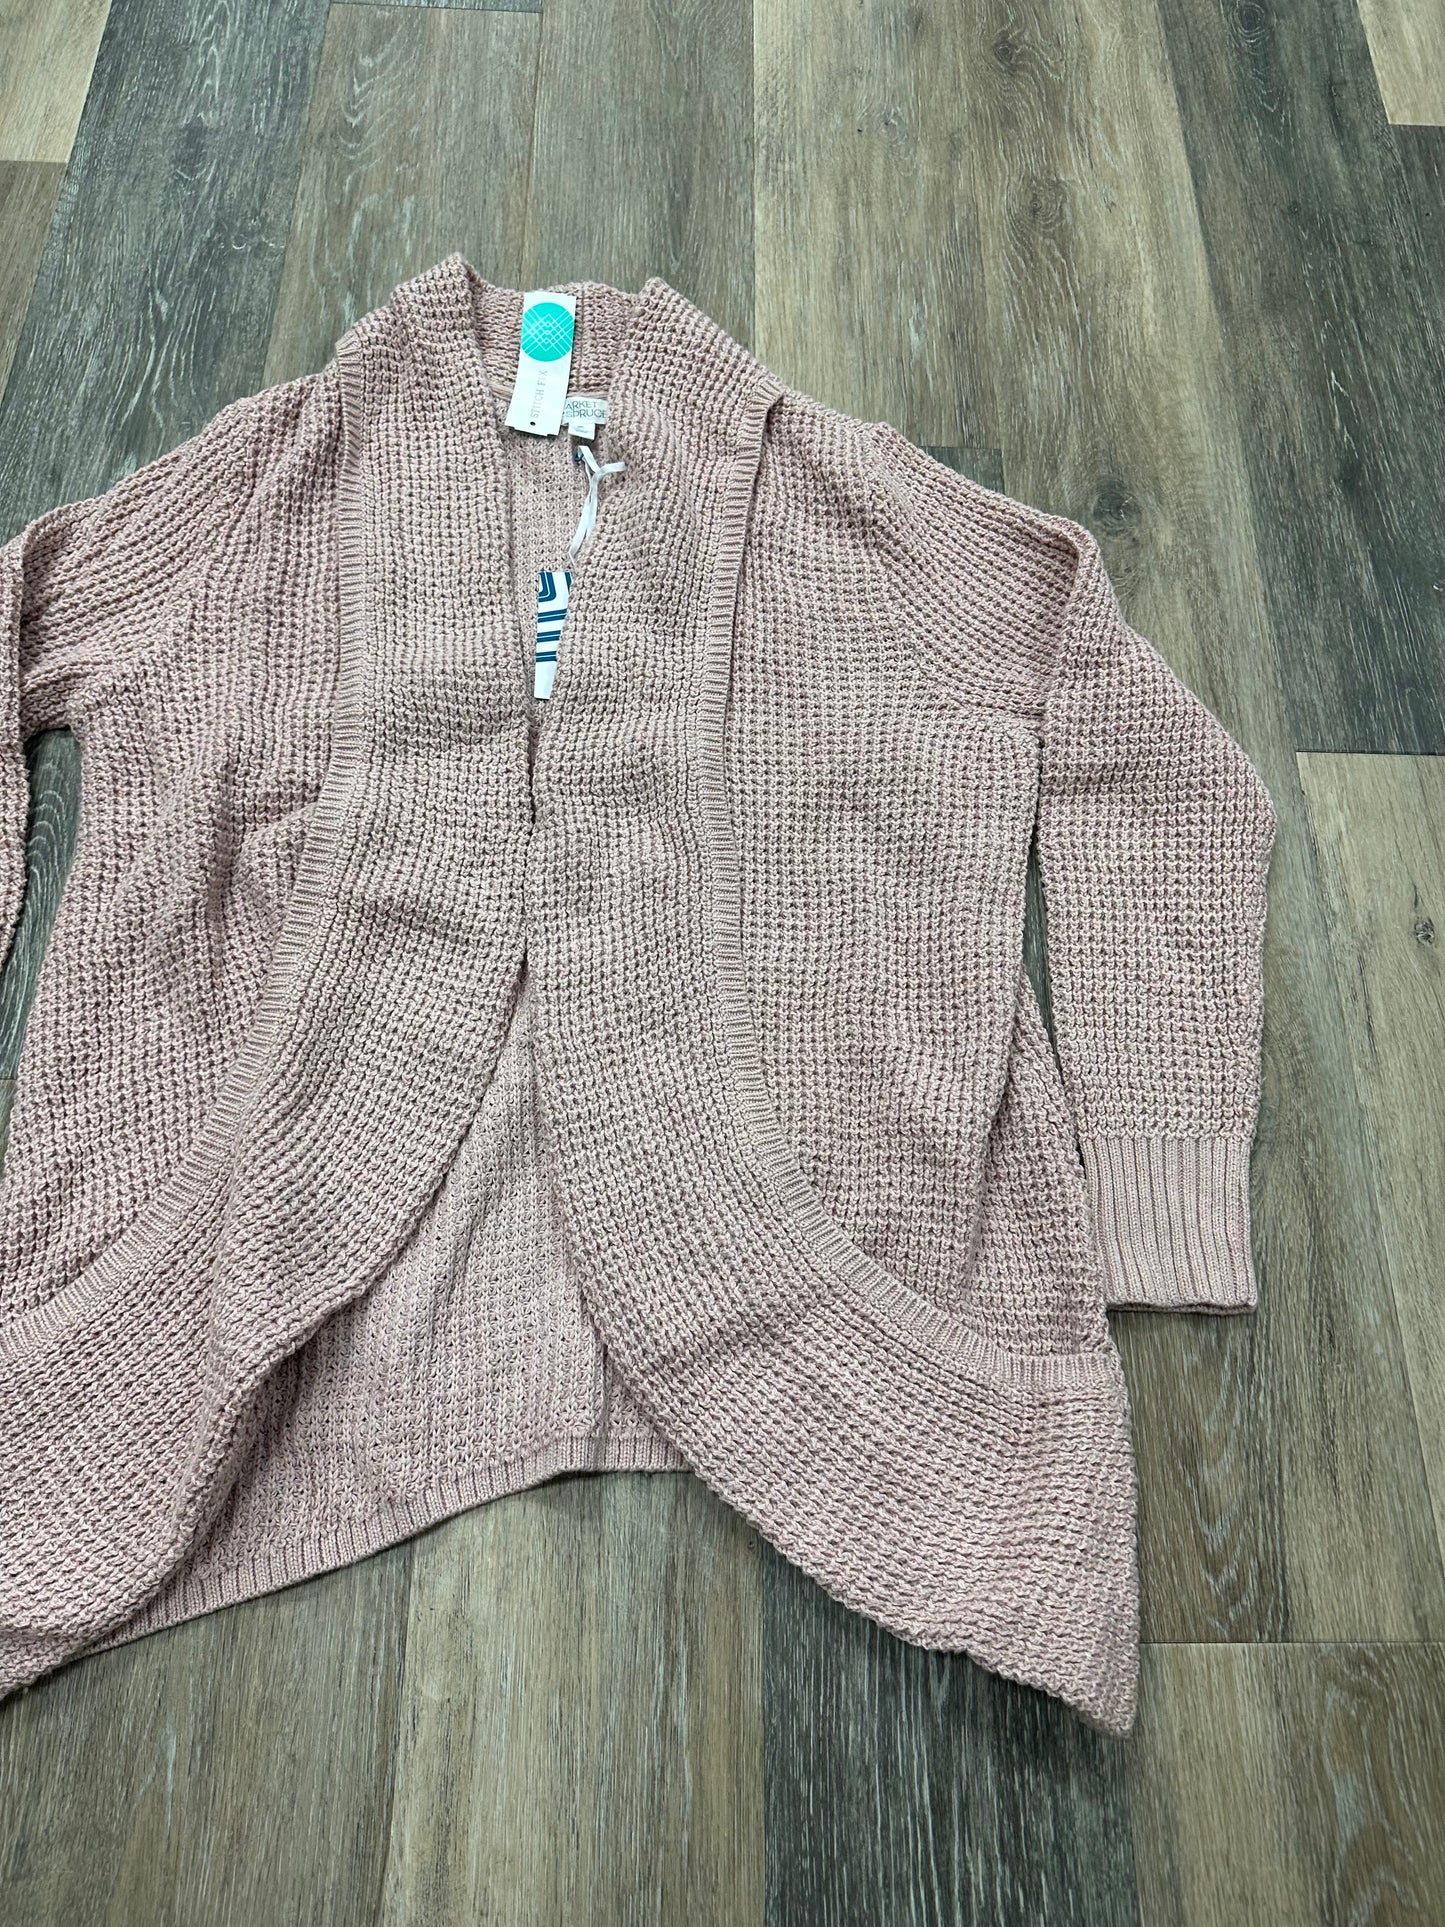 Sweater Cardigan By Market & Spruce  Size: Xxl